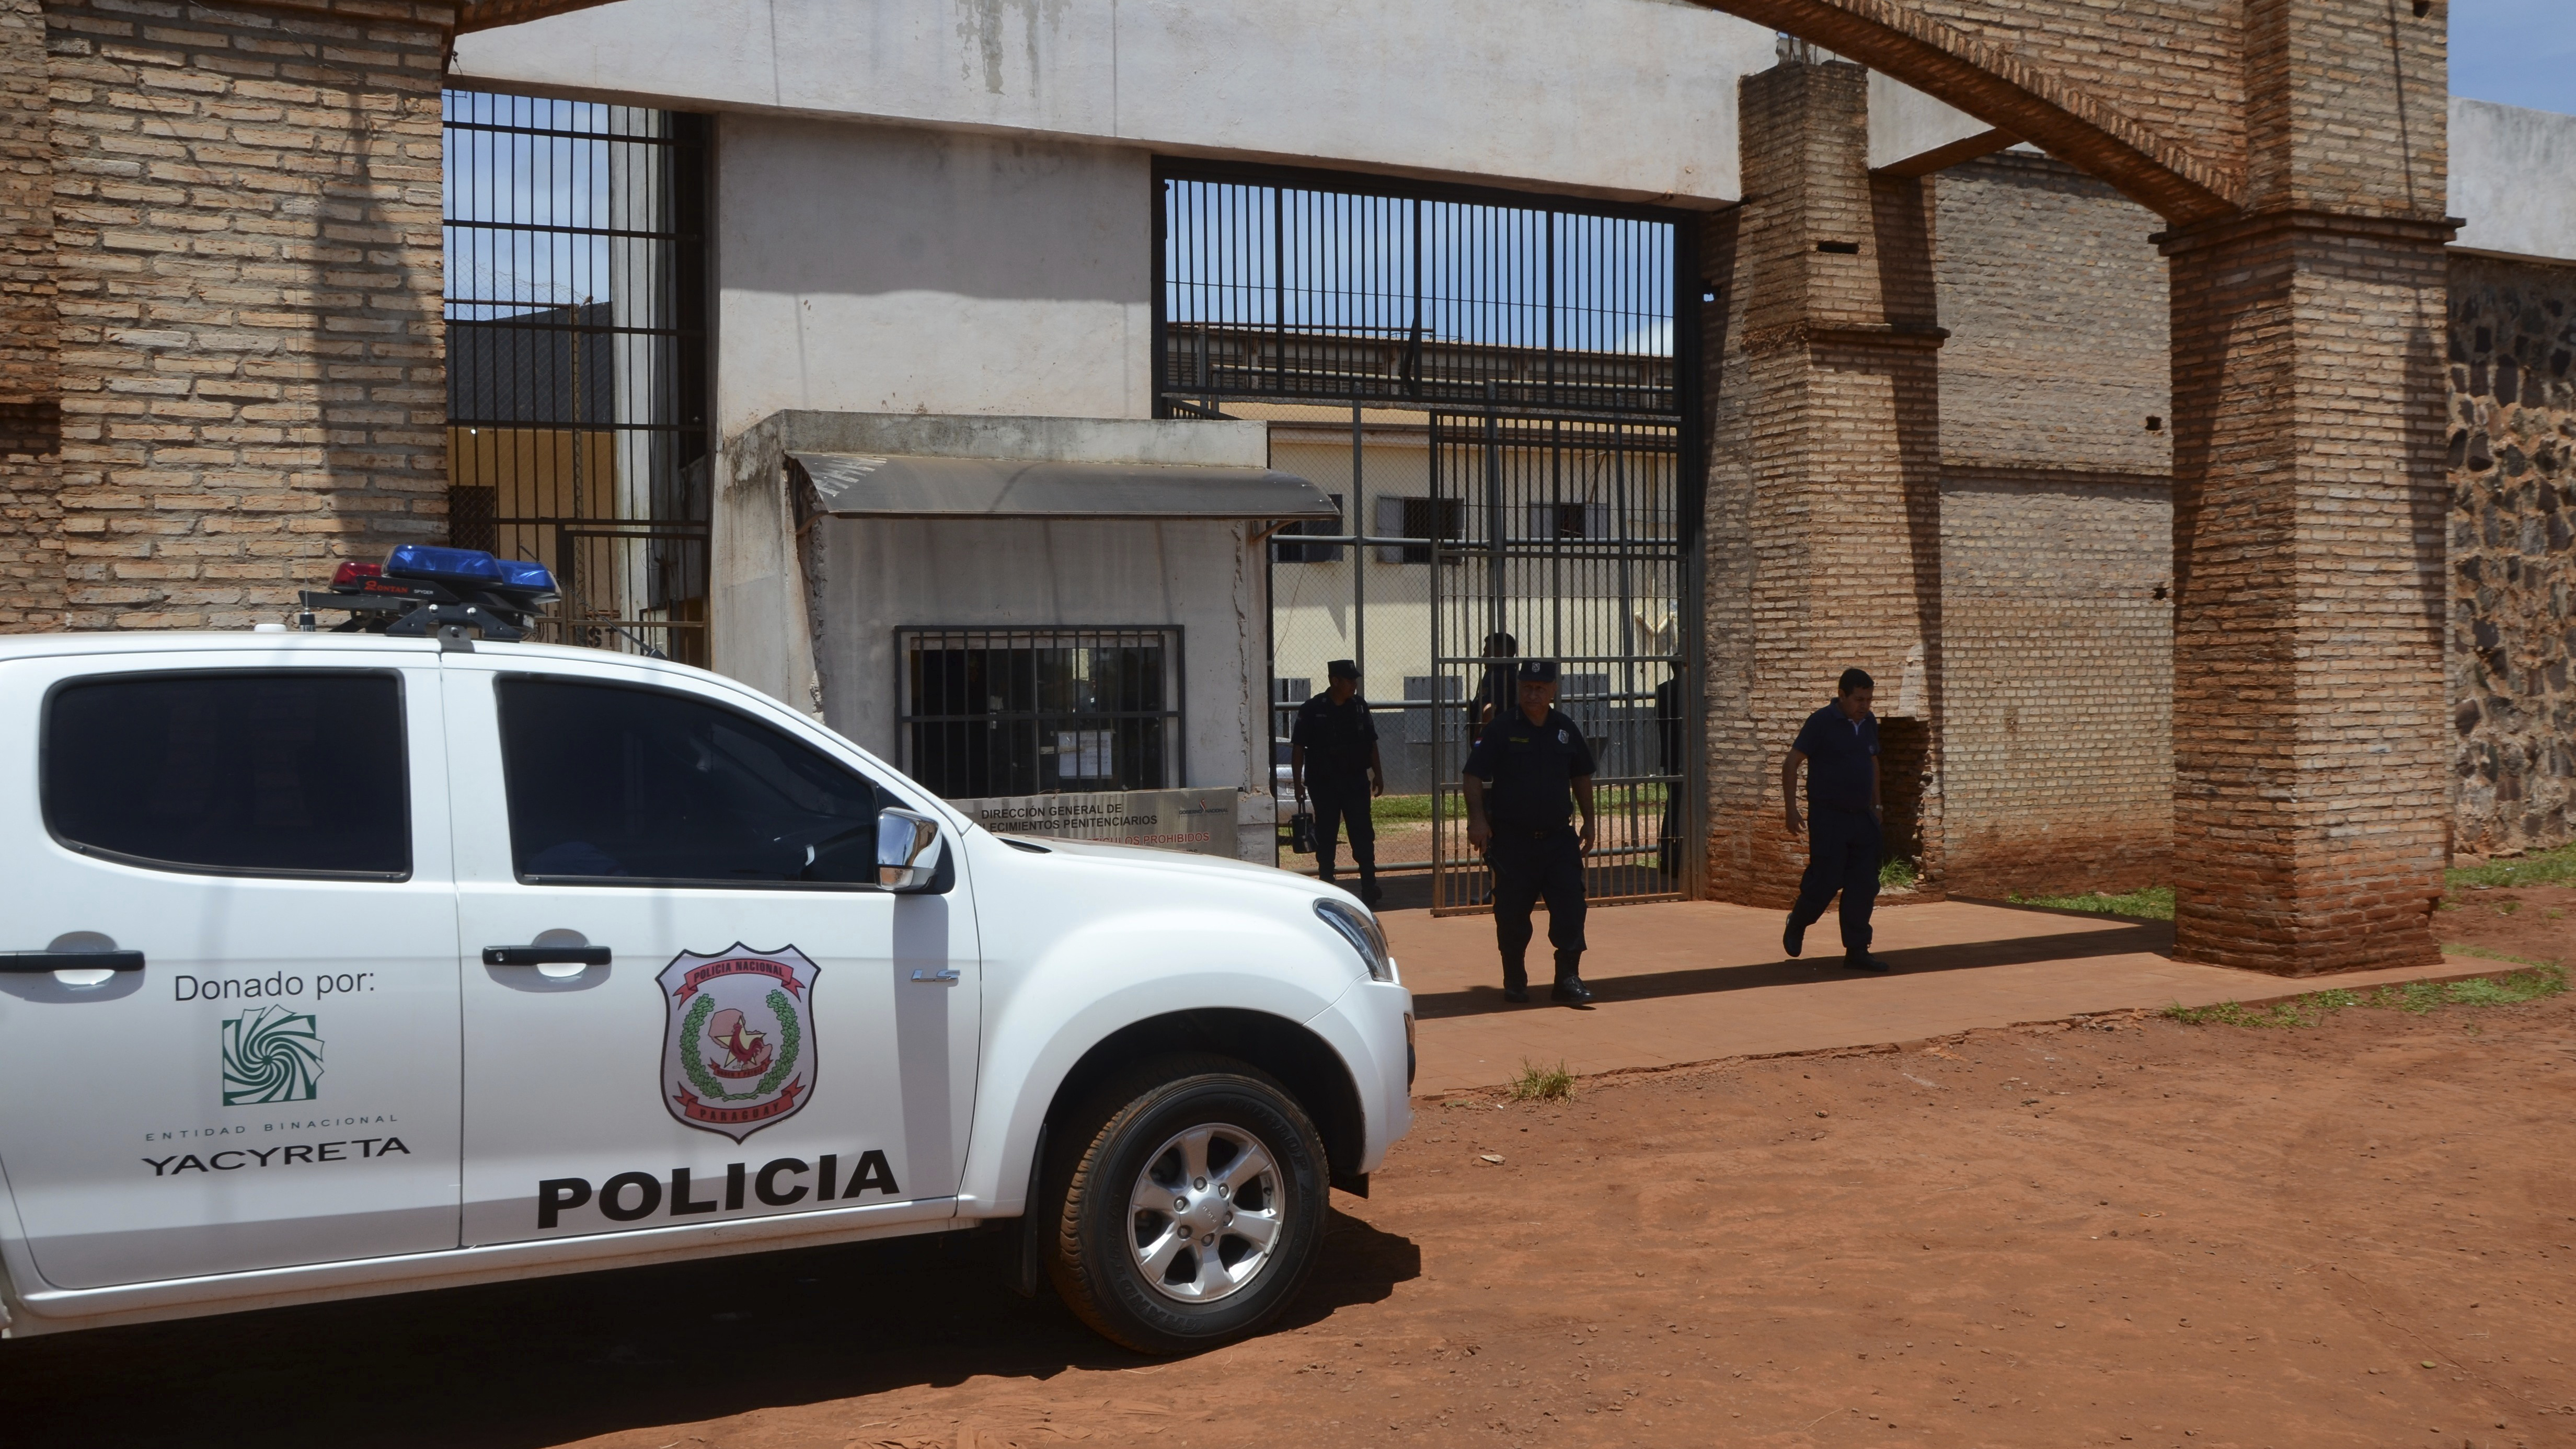 Tras los atentados contra el alcalde Acevedo y el fiscal Pecci, las autoridades de Paraguay alertan: “Vamos camino a ser una cocina de drogas”